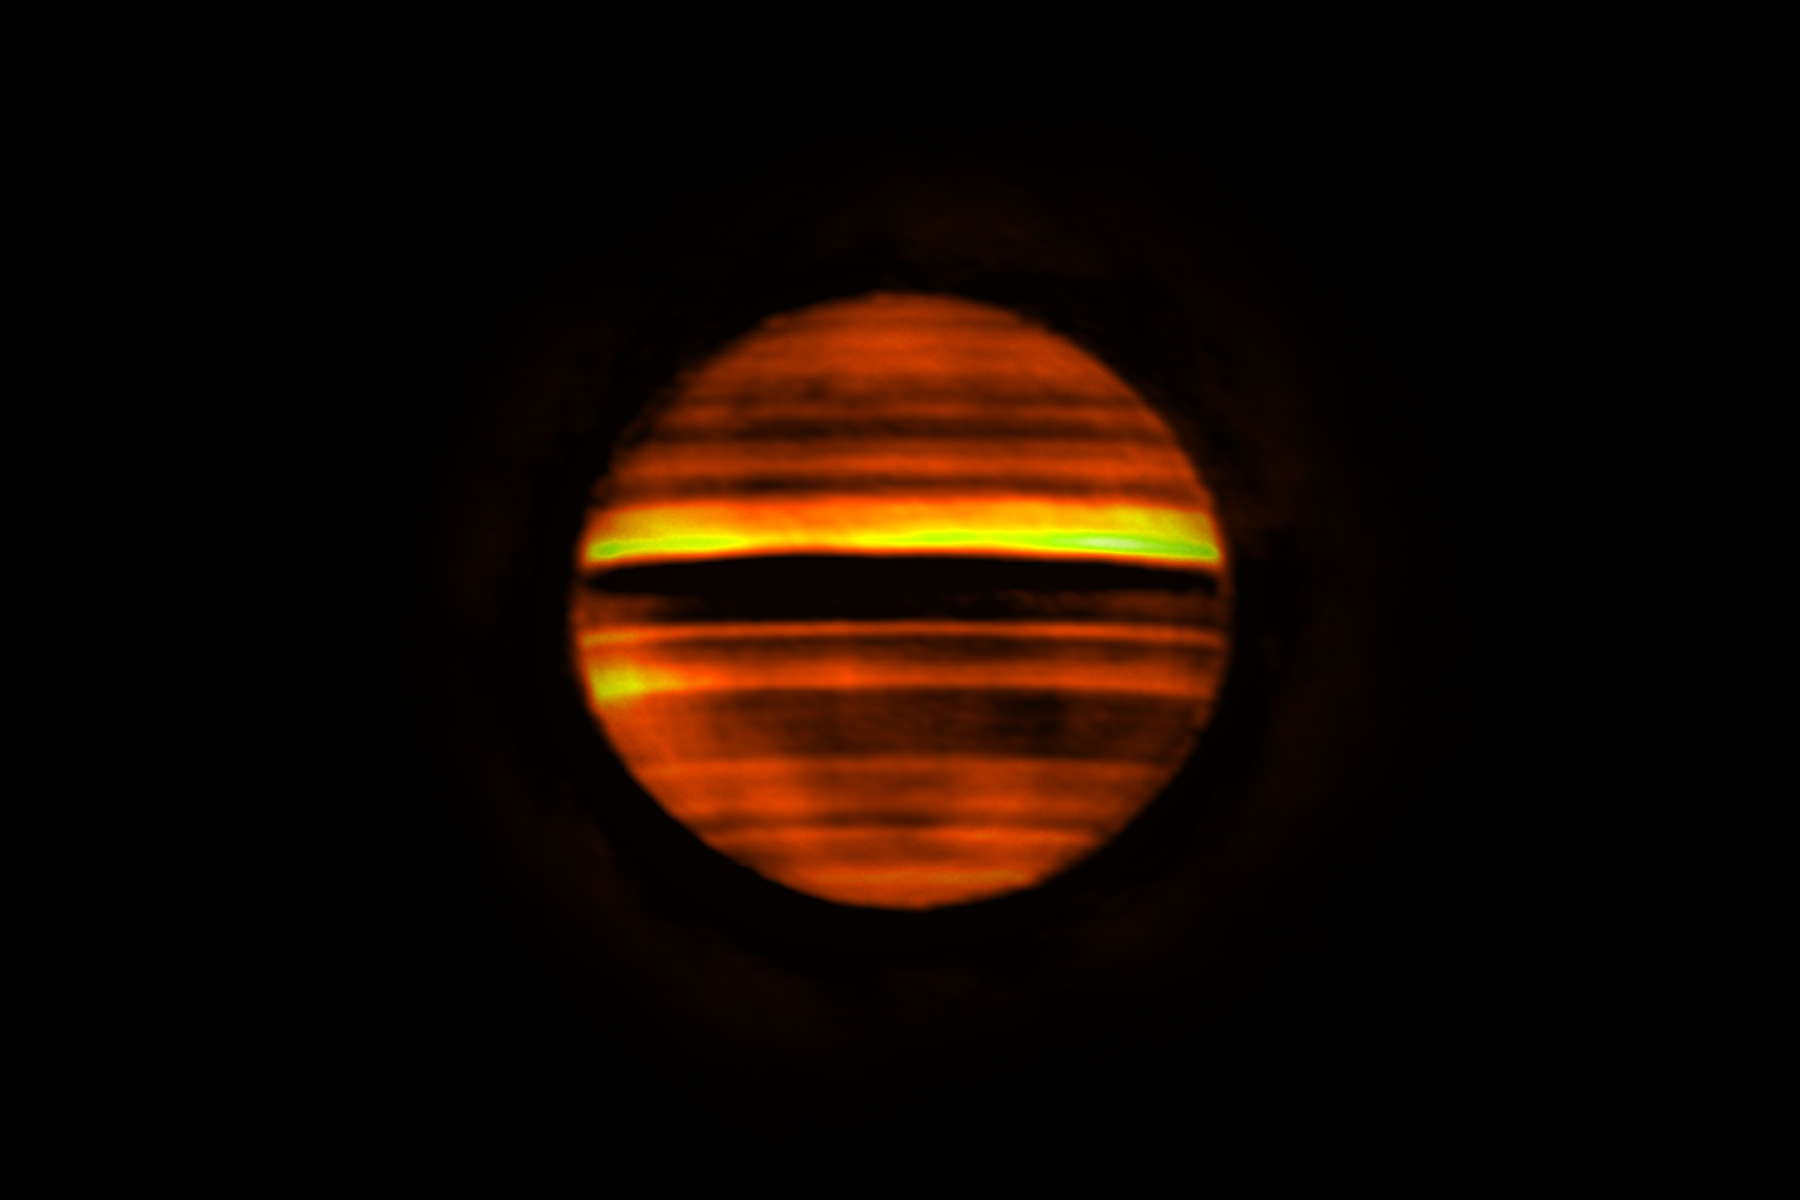 Imagen de radio de Júpiter hecha con ALMA. Las bandas brillantes indican altas temperaturas y las bandas oscuras bajas temperaturas. Las bandas oscuras corresponden a las zonas de Júpiter, que a menudo son blancas en longitudes de onda visibles. Las bandas brillantes corresponden a los cinturones marrones del planeta. Esta imagen contiene más de 10 horas de datos, por lo que los detalles finos están manchados por la rotación del planeta. Crédito: ALMA (ESO/NAOJ/NRAO), I. de Pater et al .; NRAO/AUI NSF, S. Dagnello.